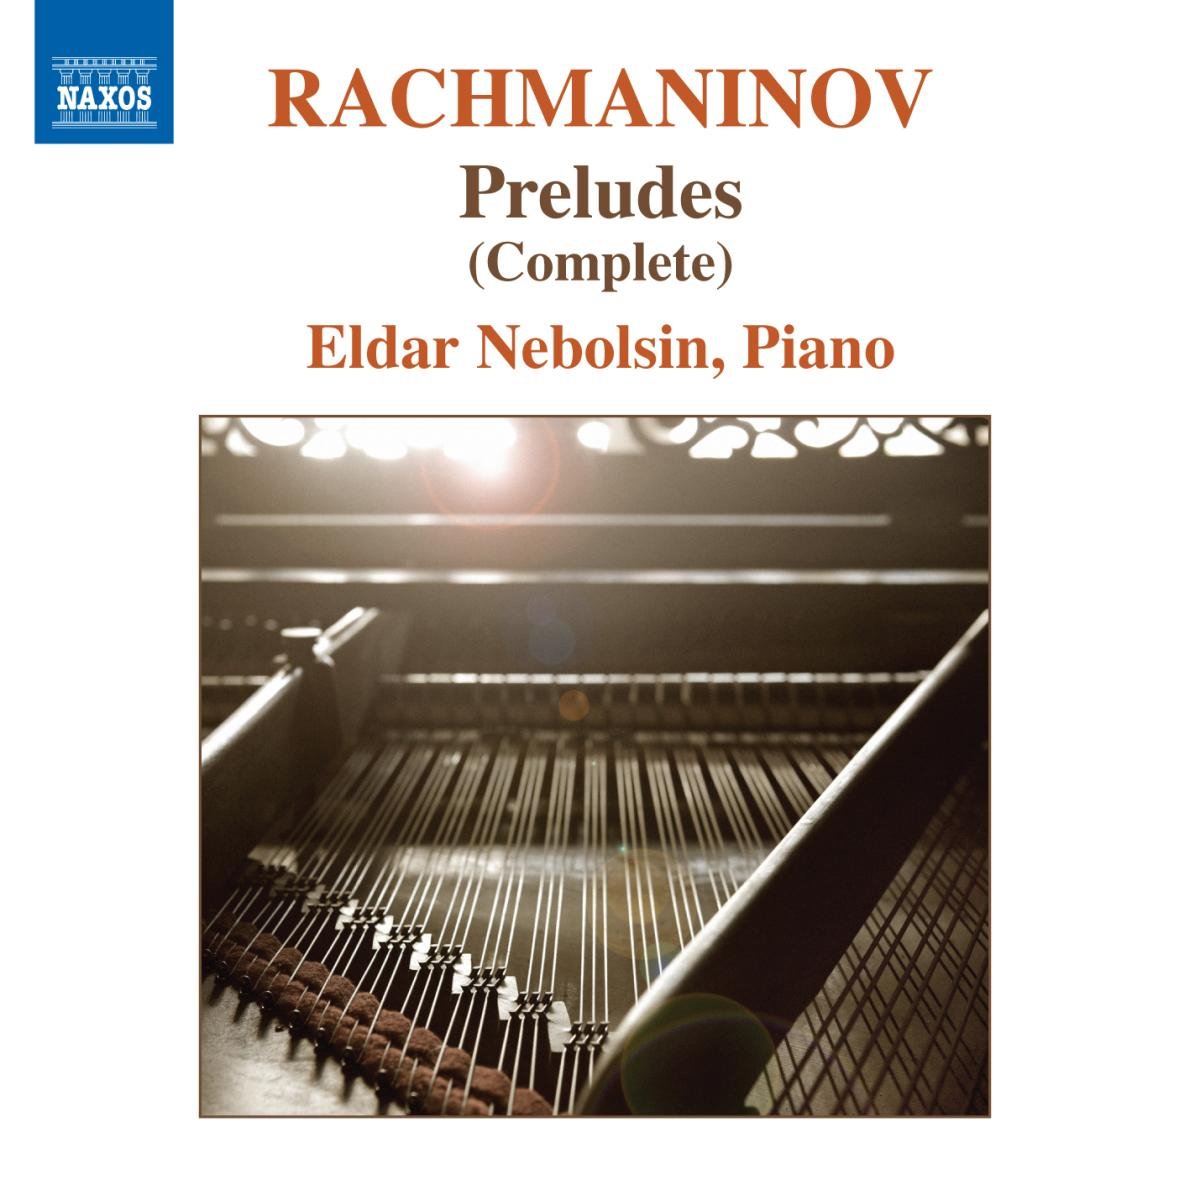 Rachmaninov: Preludes for piano (Complete) | Sergei Rachmaninov carturesti.ro poza noua